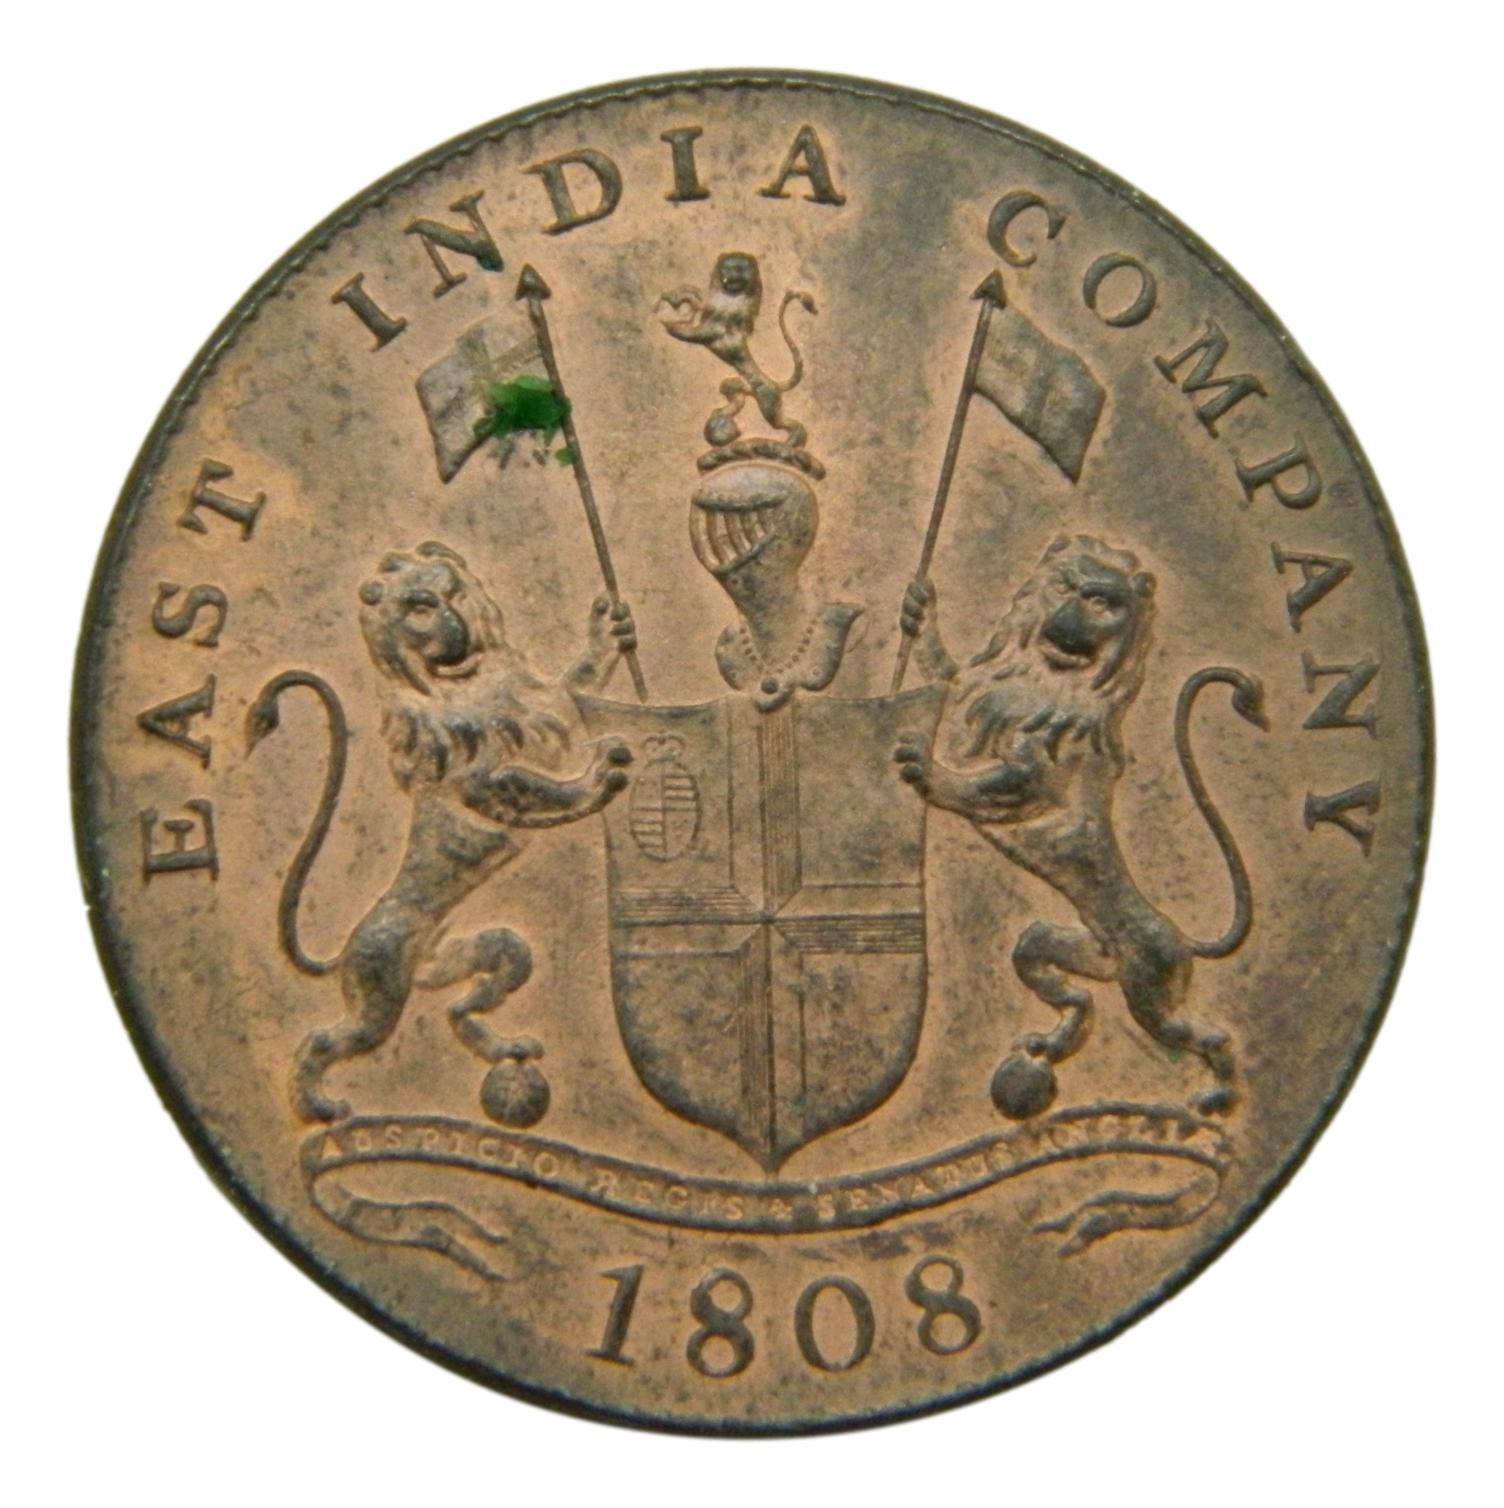 1808 - INDIA BRITANICA - 20 CASH - EBC - S9/674